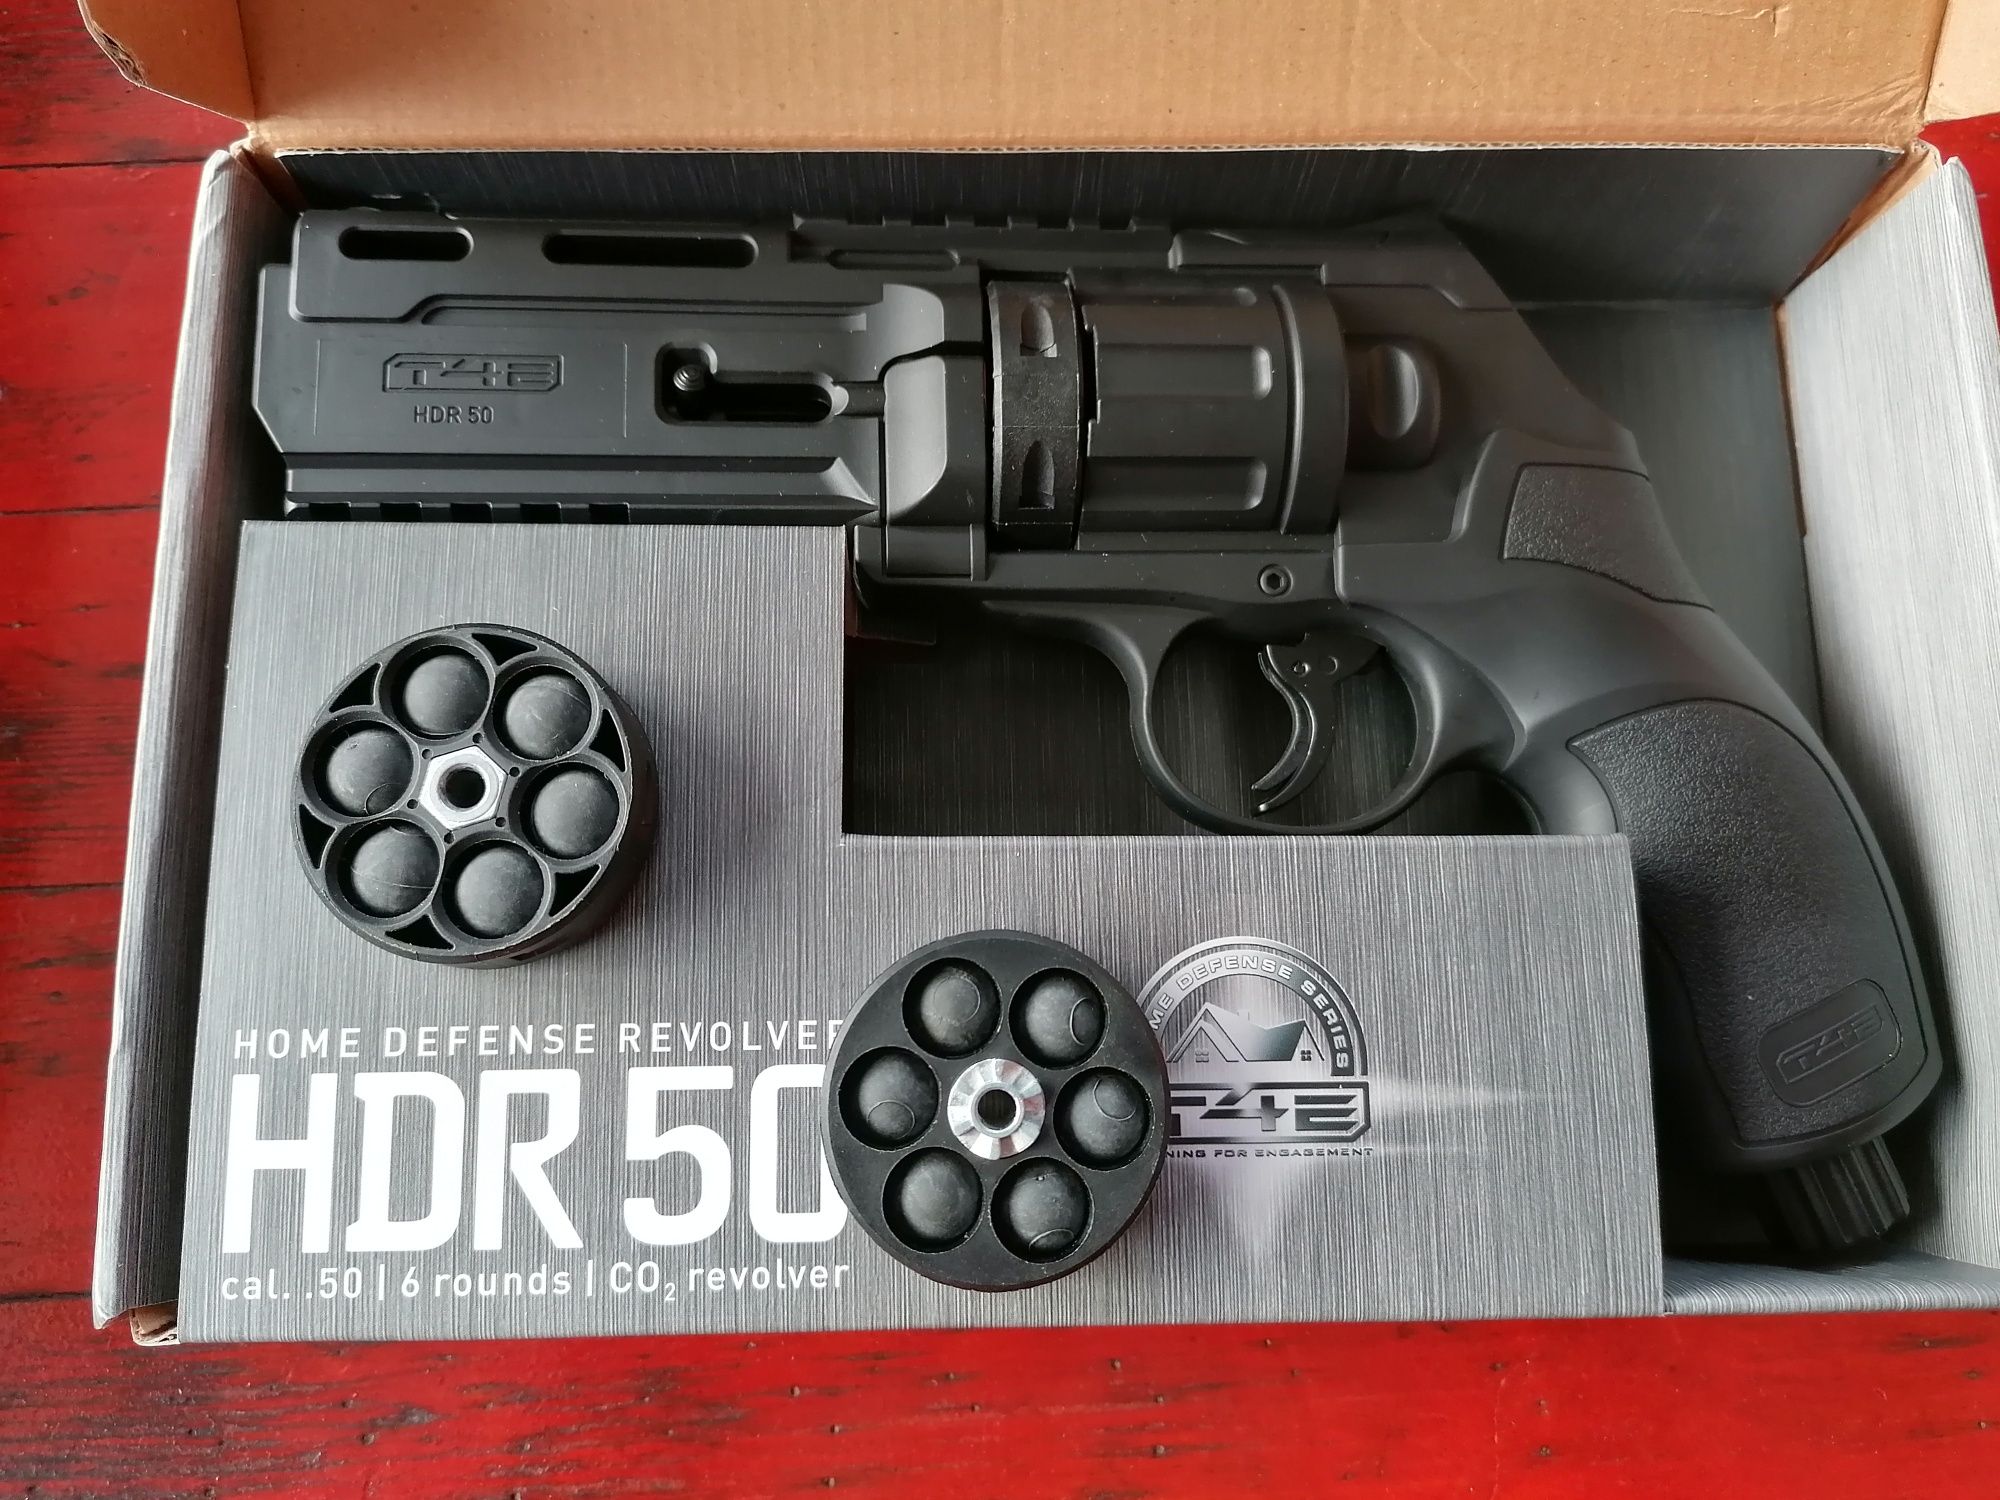 Pistol Hdr50, nou